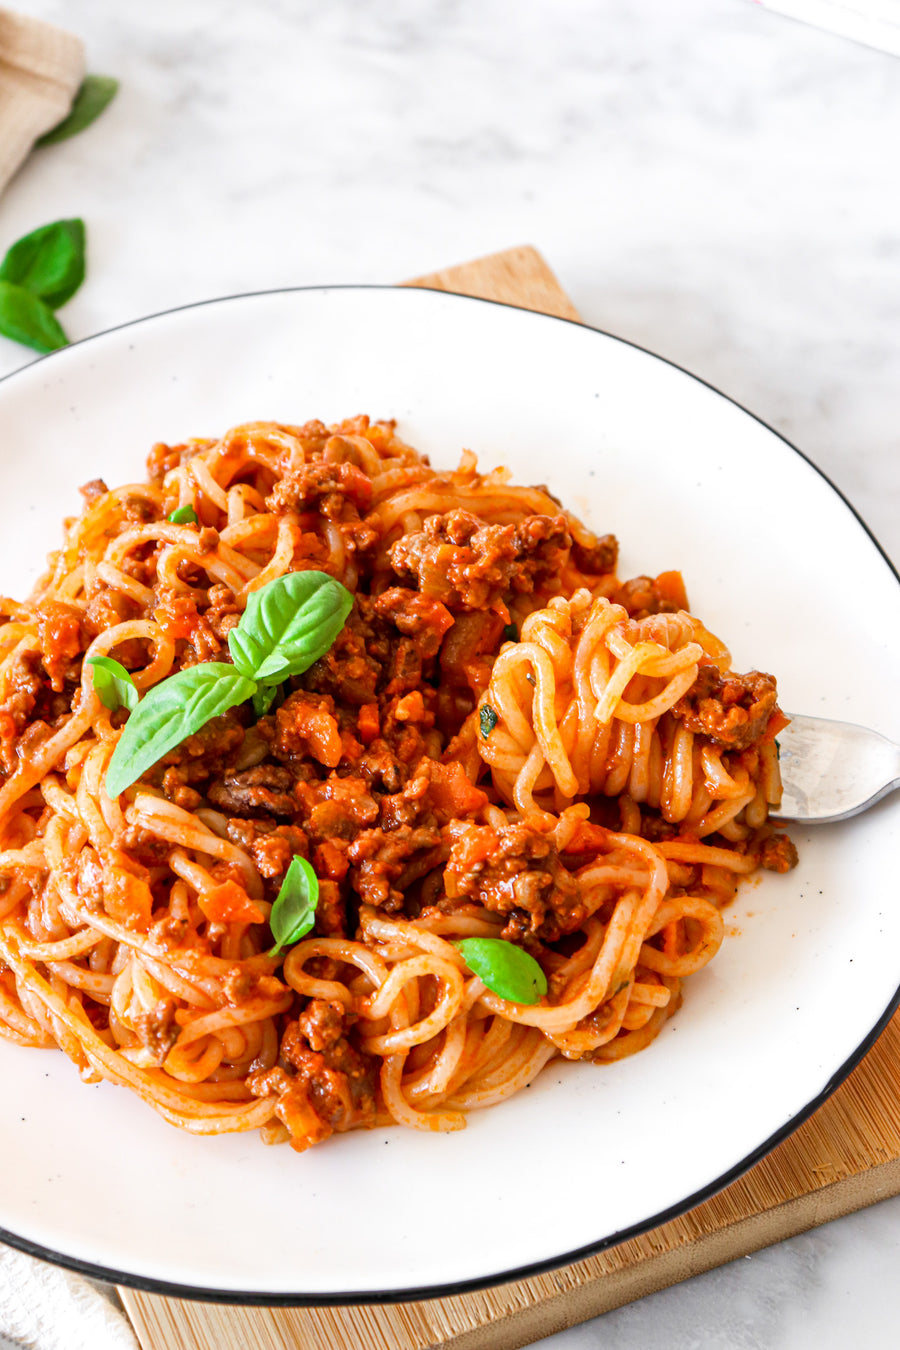 Combien y a-t-il de calories dans LIV Happy Food Spaghetti